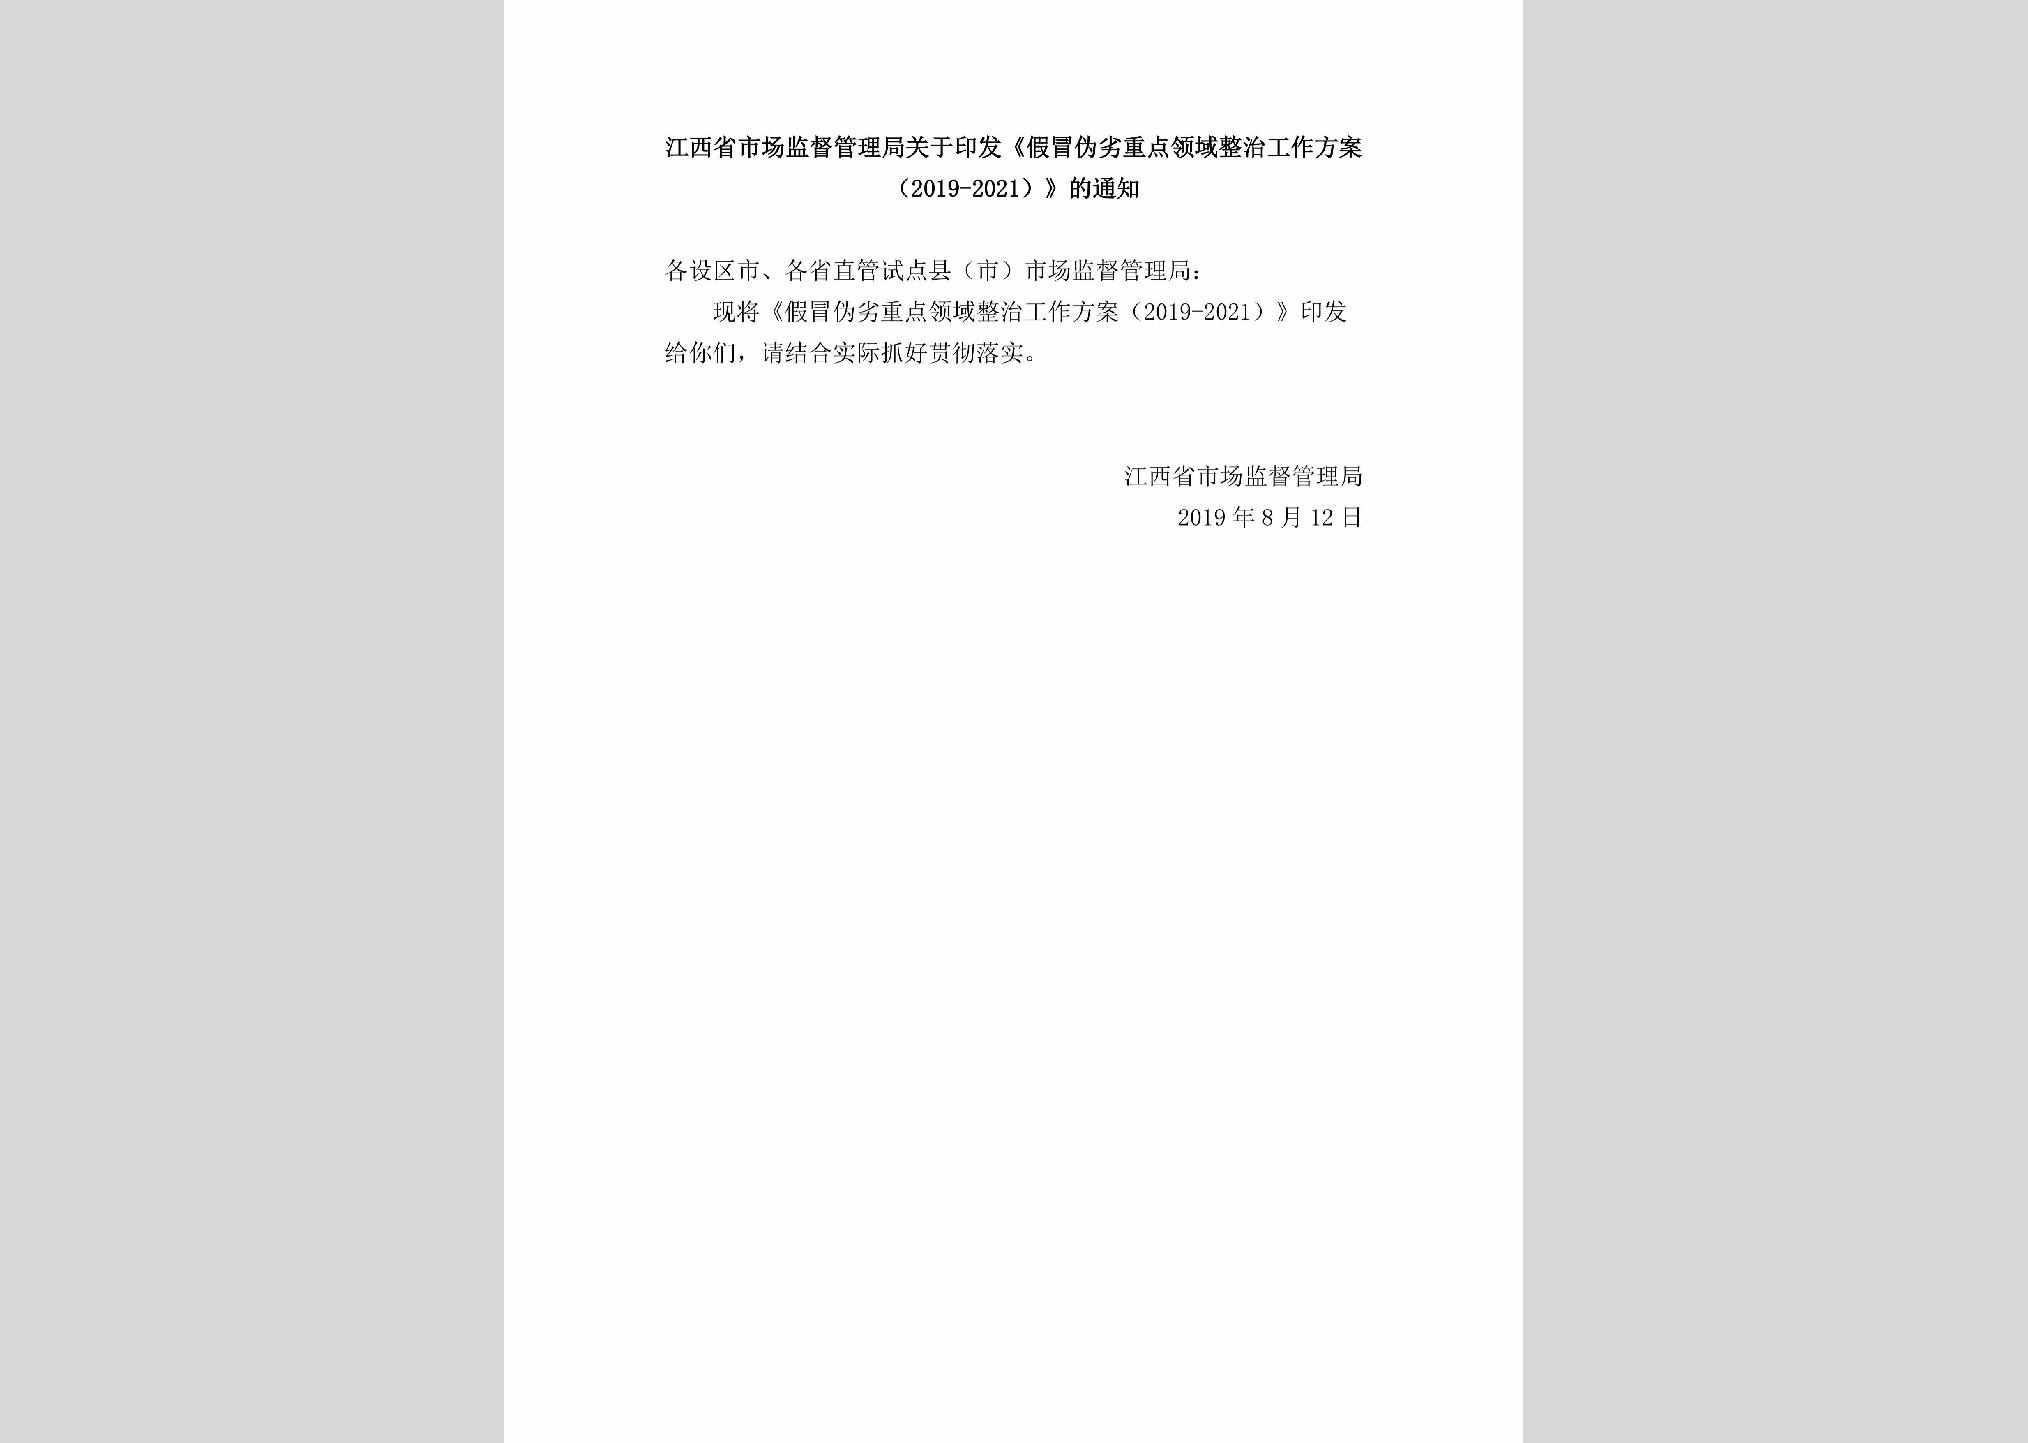 JX-YFJMWLZD-2019：江西省市场监督管理局关于印发《假冒伪劣重点领域整治工作方案（2019-2021）》的通知